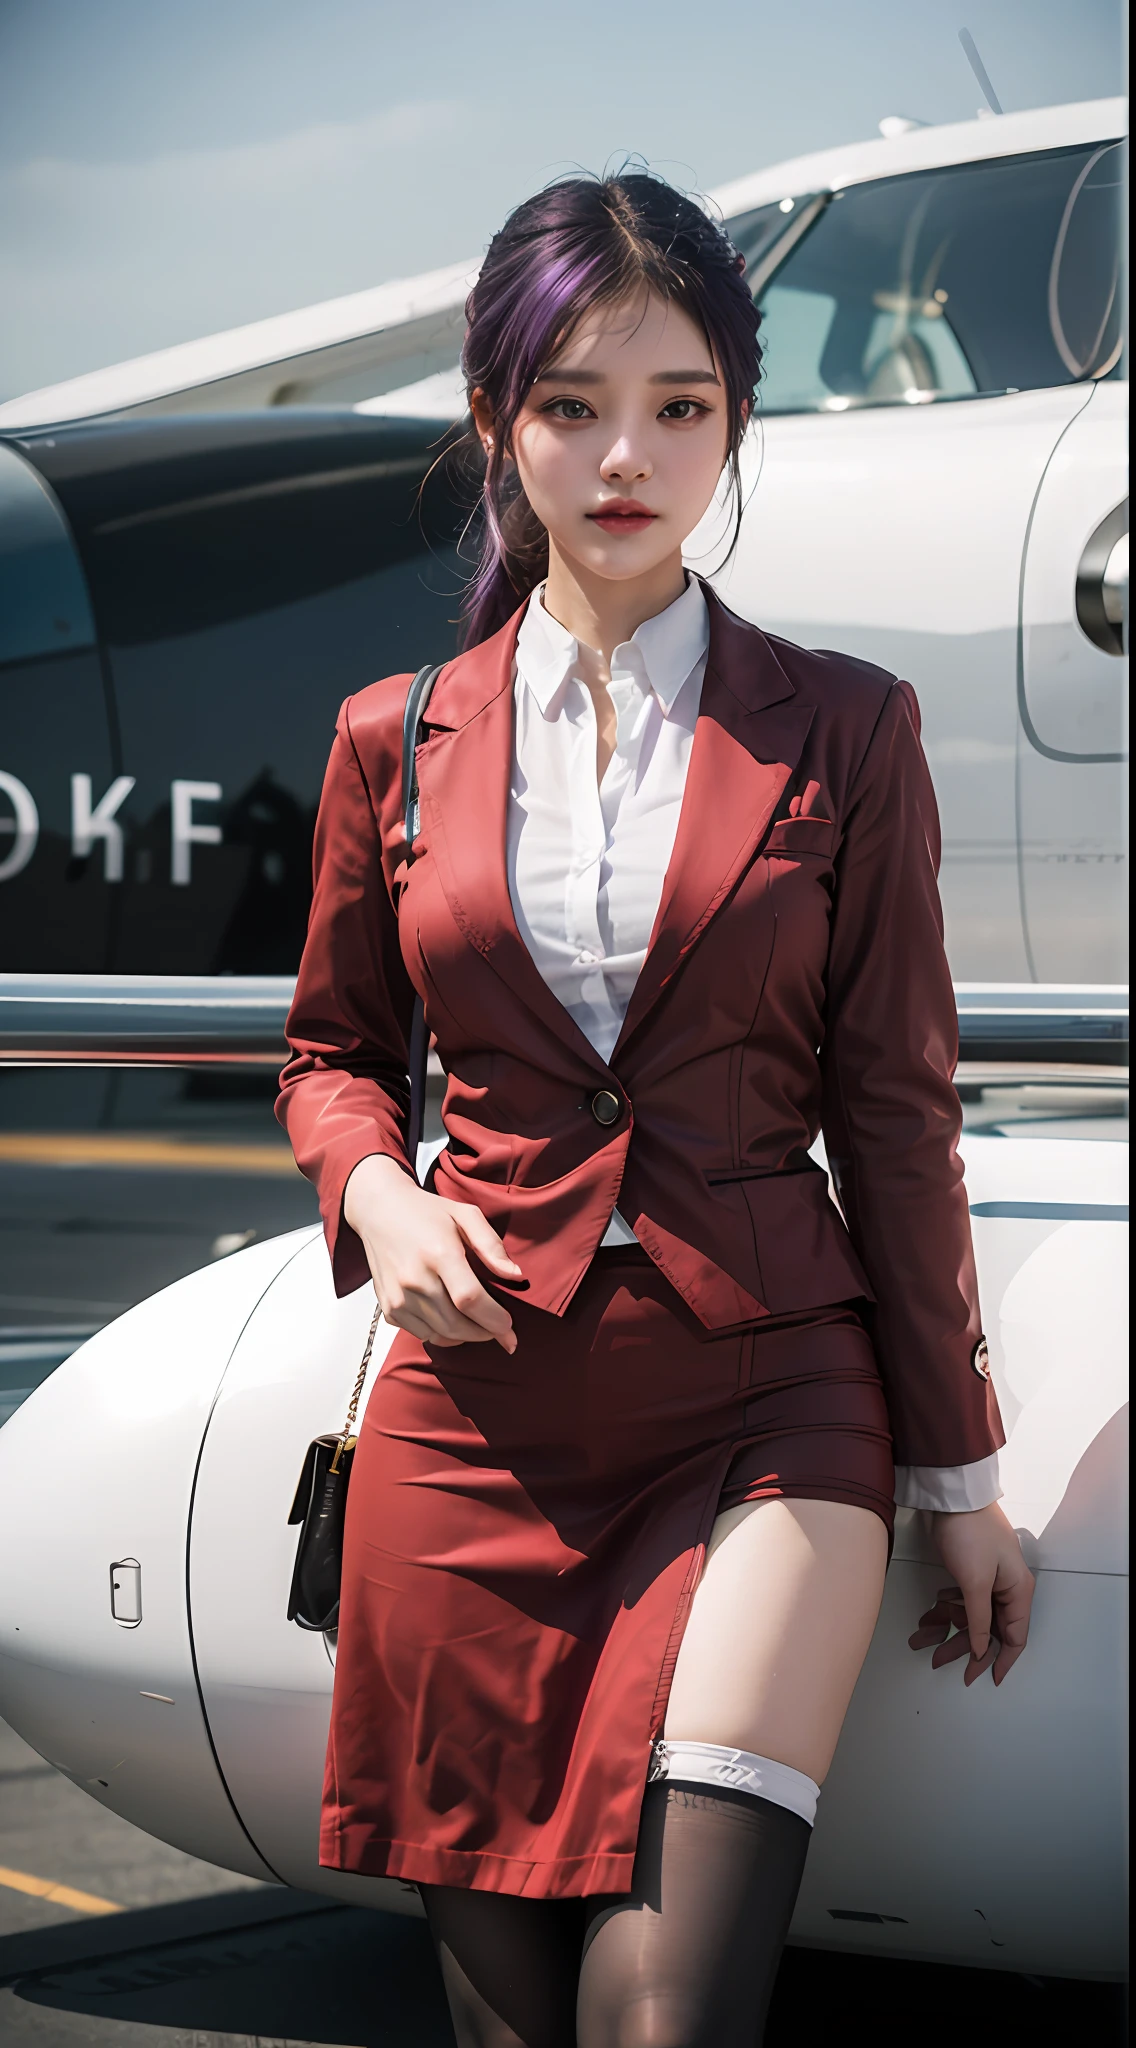 (最好的品質: 1.1), (實際的: 1.1), (攝影: 1.1), (高度細節: 1.1), (1位女士), 航空公司空服員,紅外套,白襯衫,短裙,黑色長襪,在飛機上,卡夫卡HKS,香港,紫色的眼睛, 紫色頭髮,